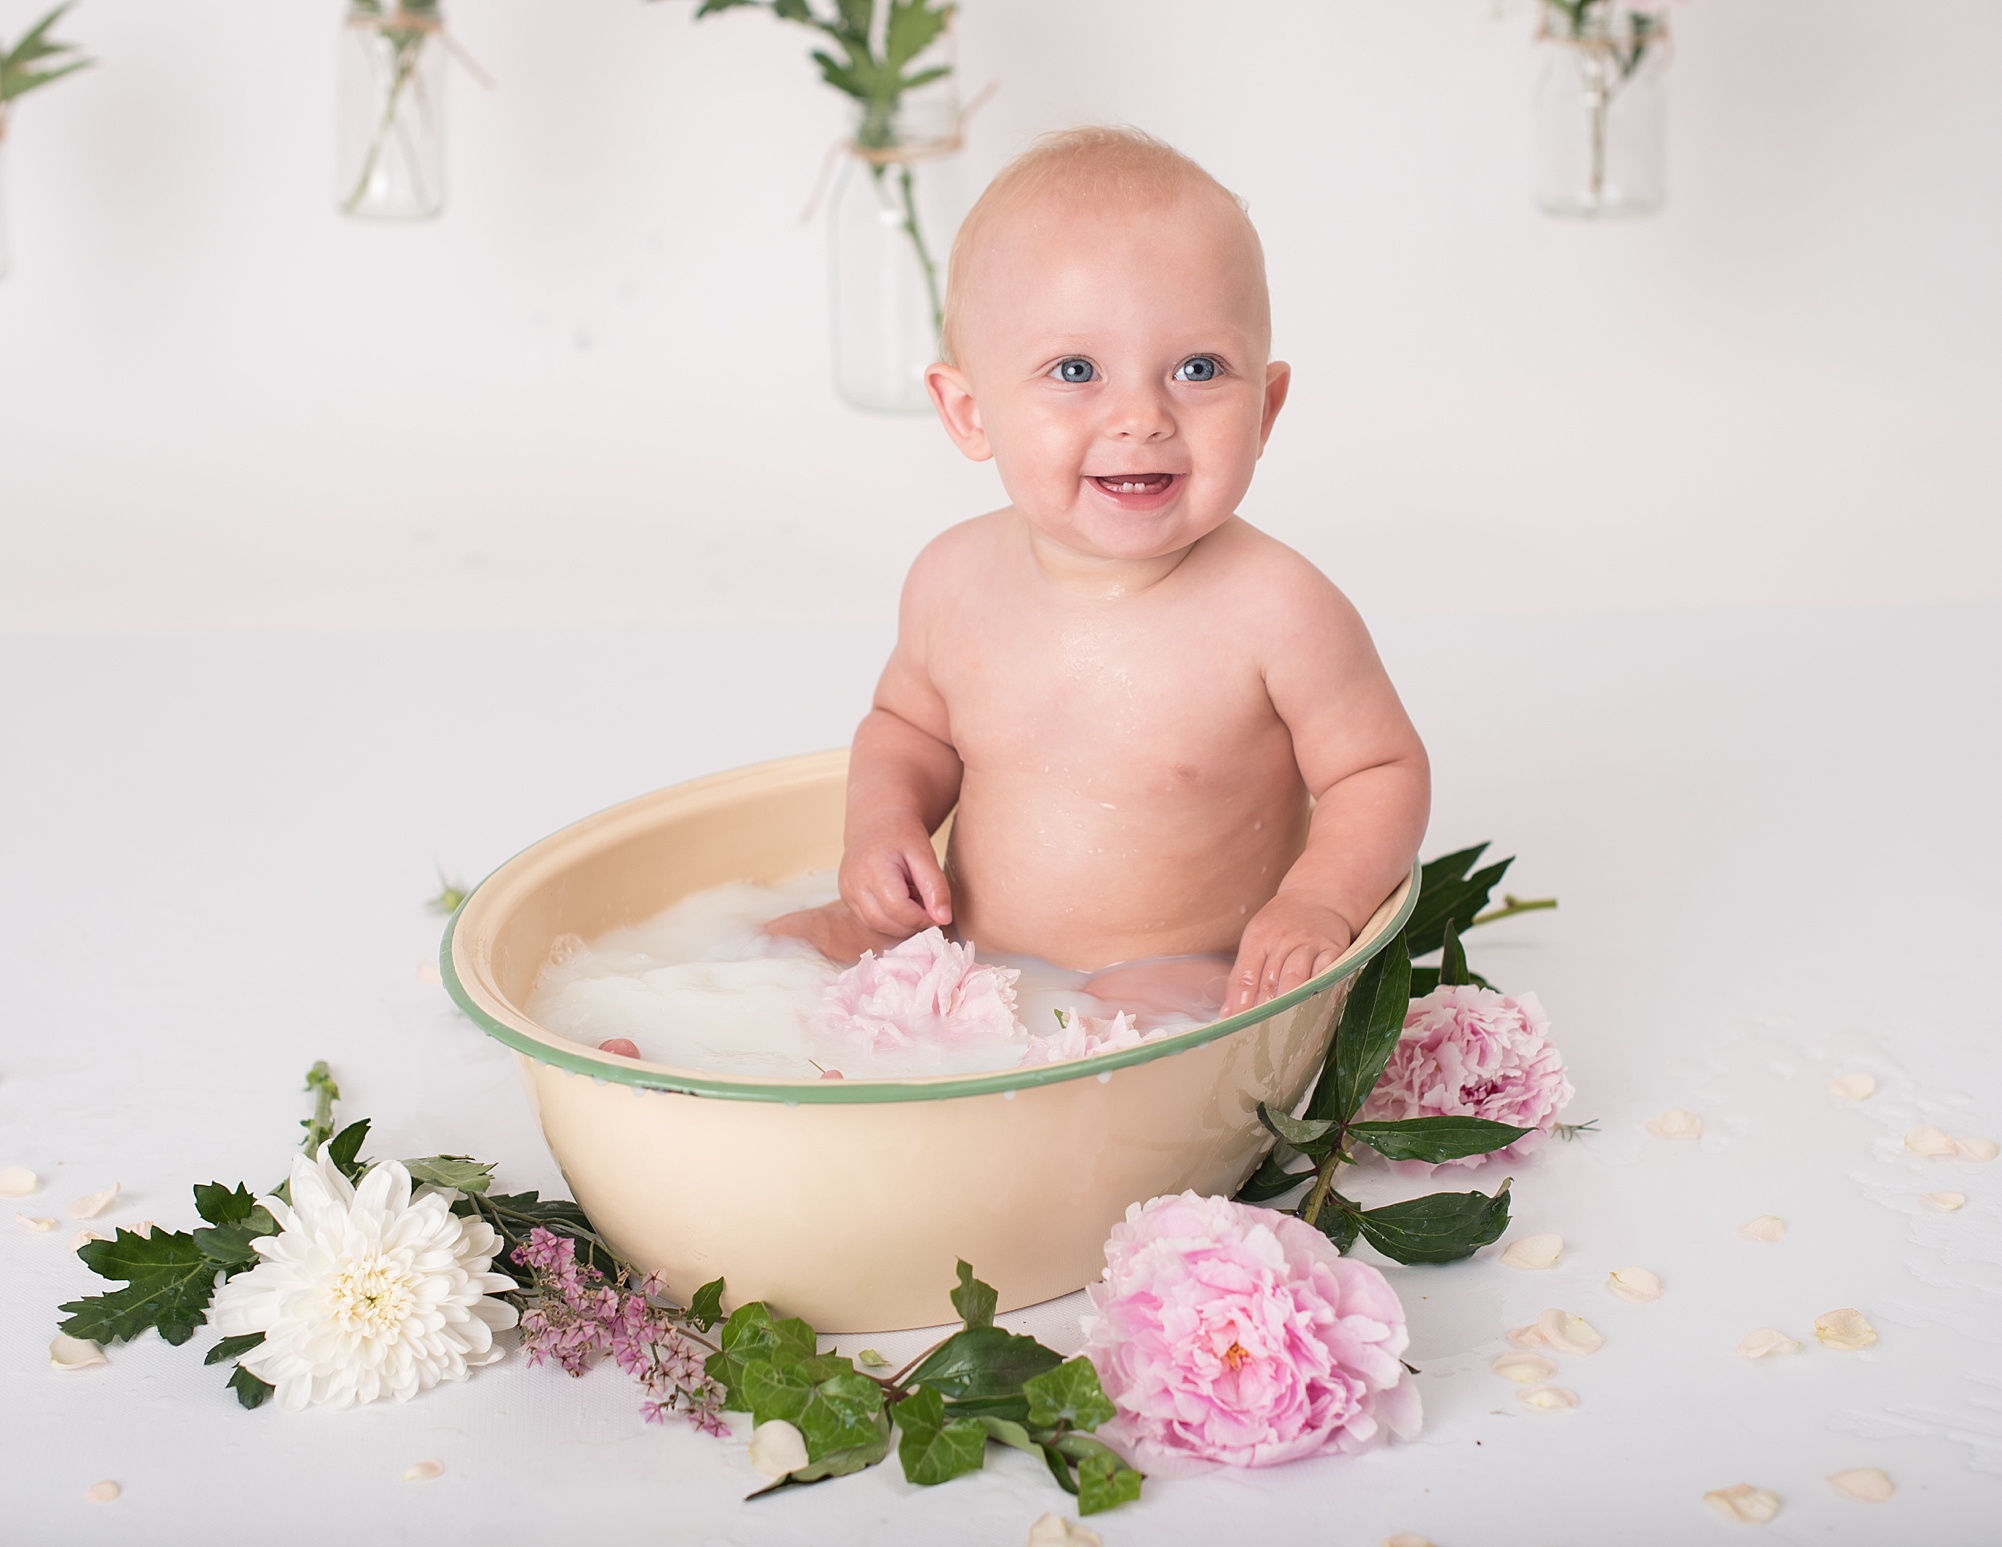 Du visar för närvarande Mjölkbadsfotografering – Livia 7 månader